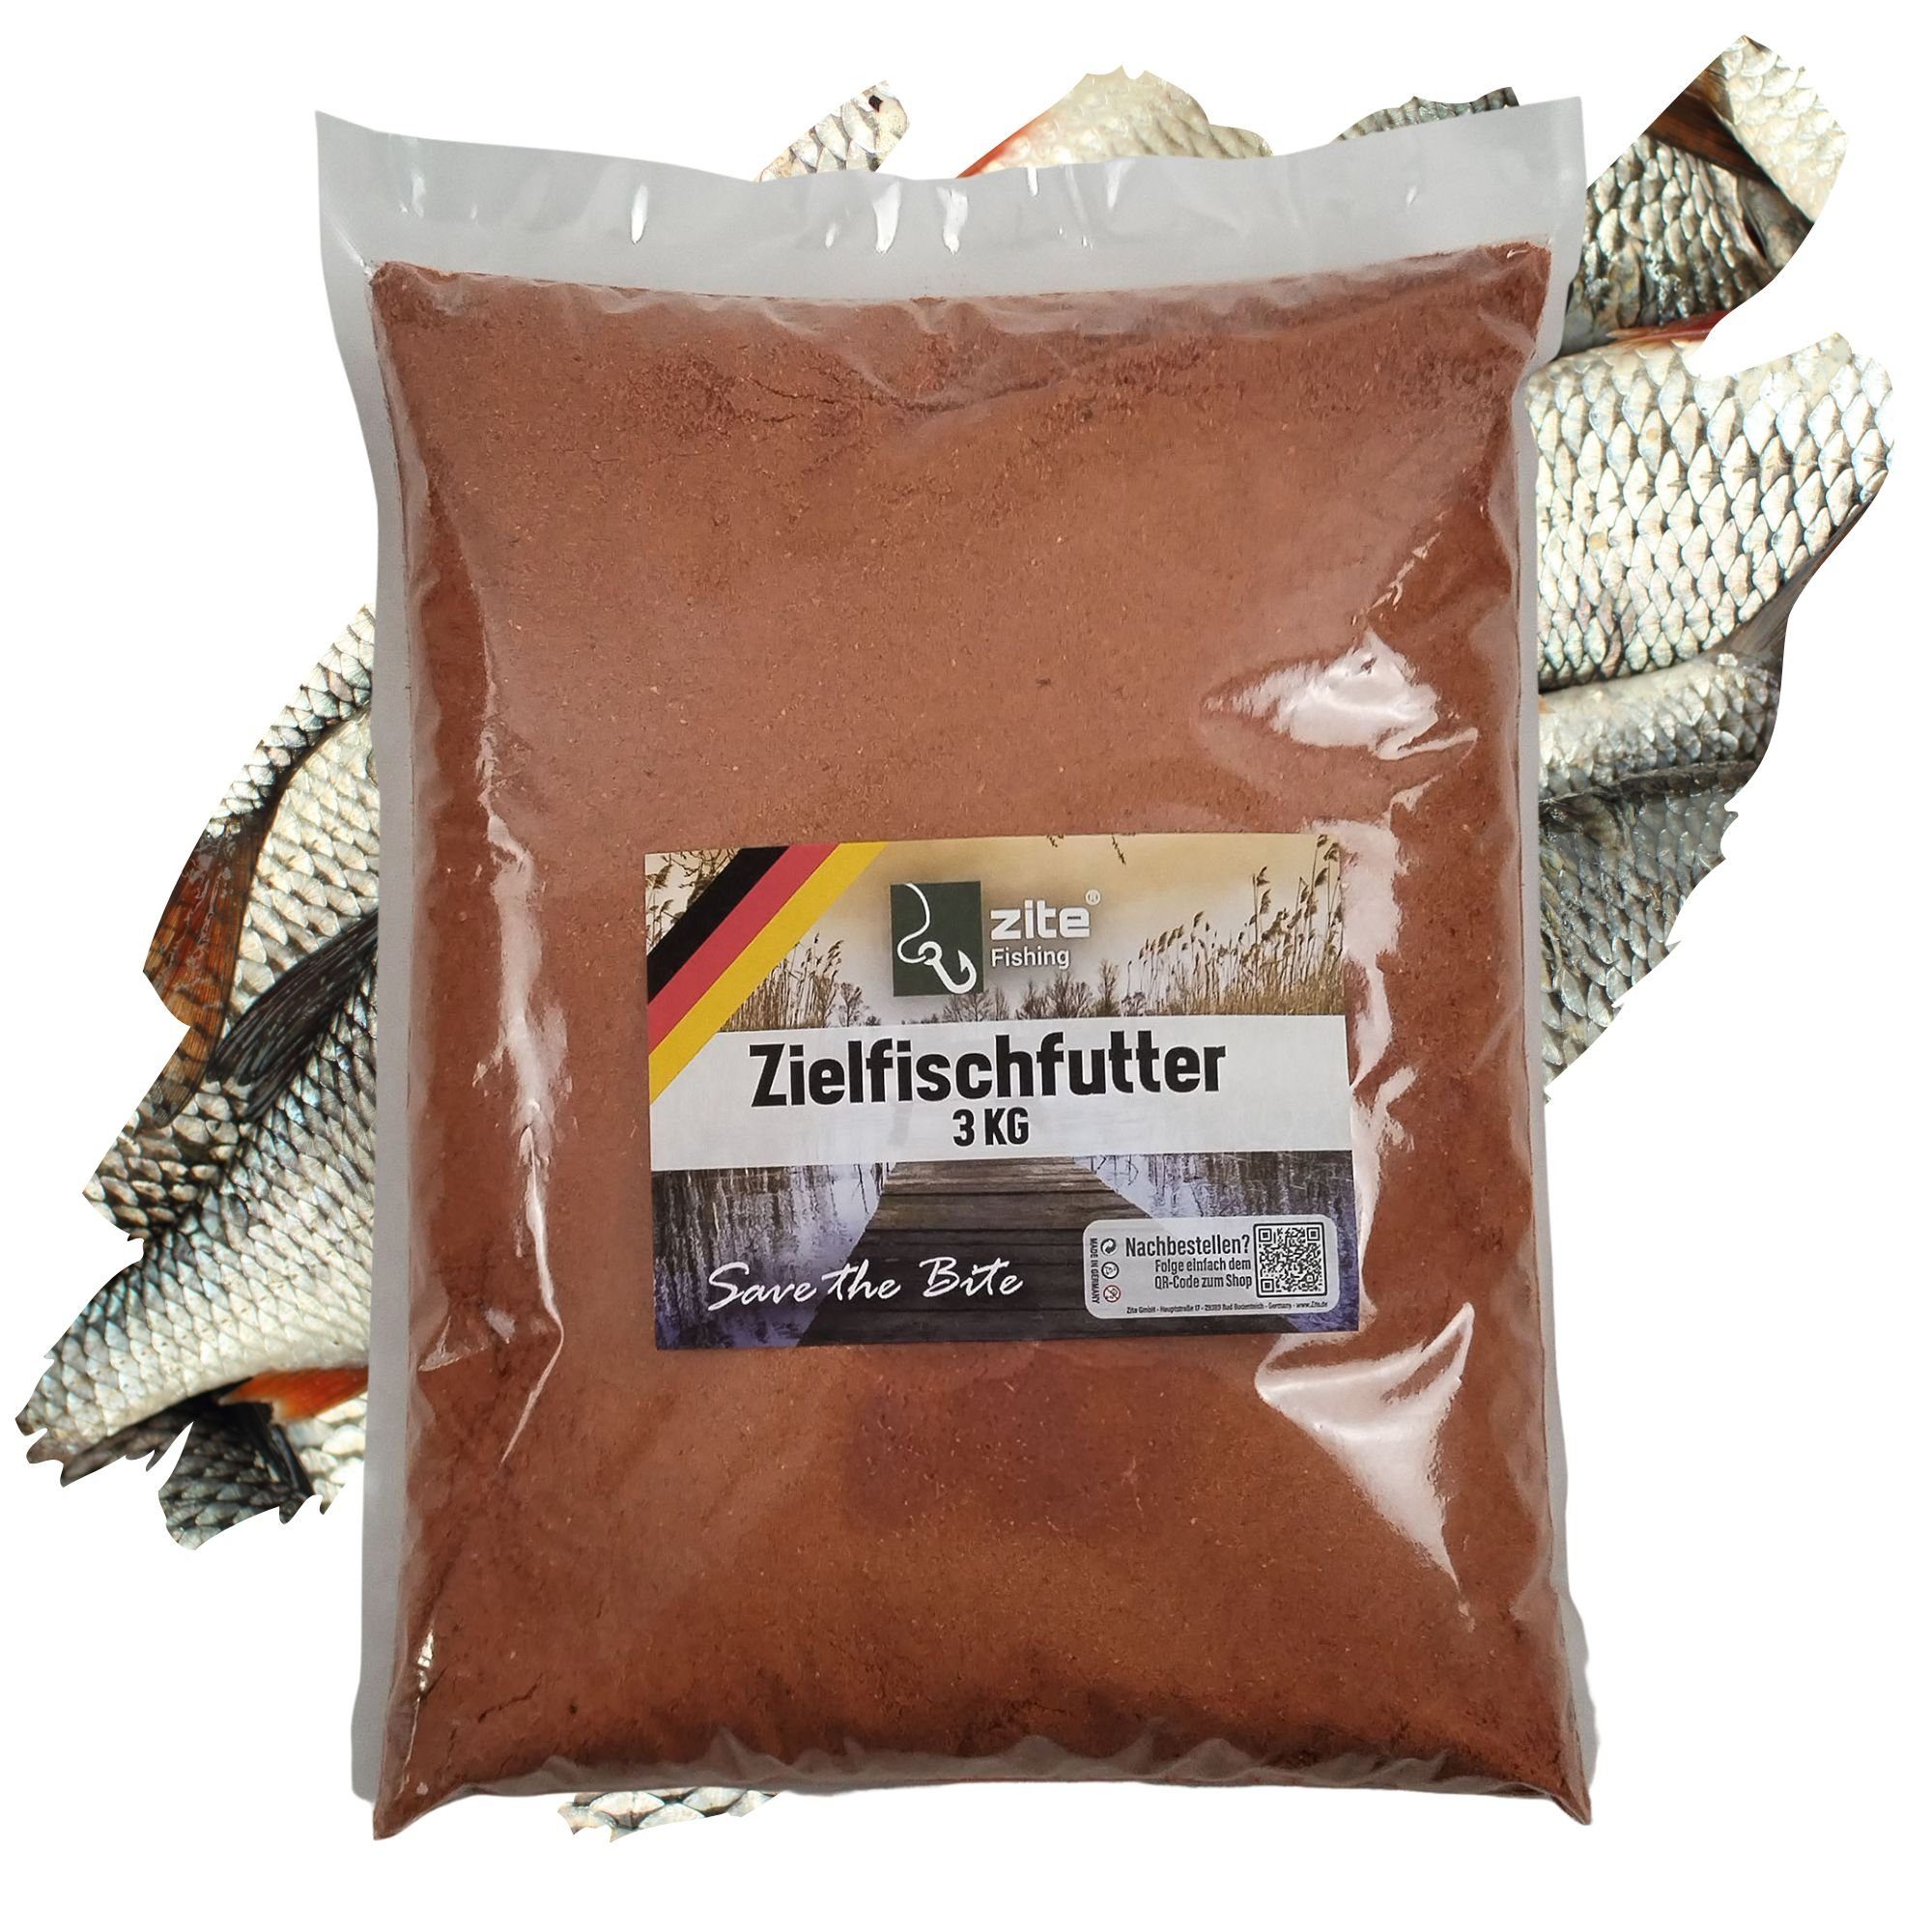 Hochattraktives - kg Grundfutter Fischlockstoff Zielfischfutter Fertigmixe Rotauge 3 Angeln Zite